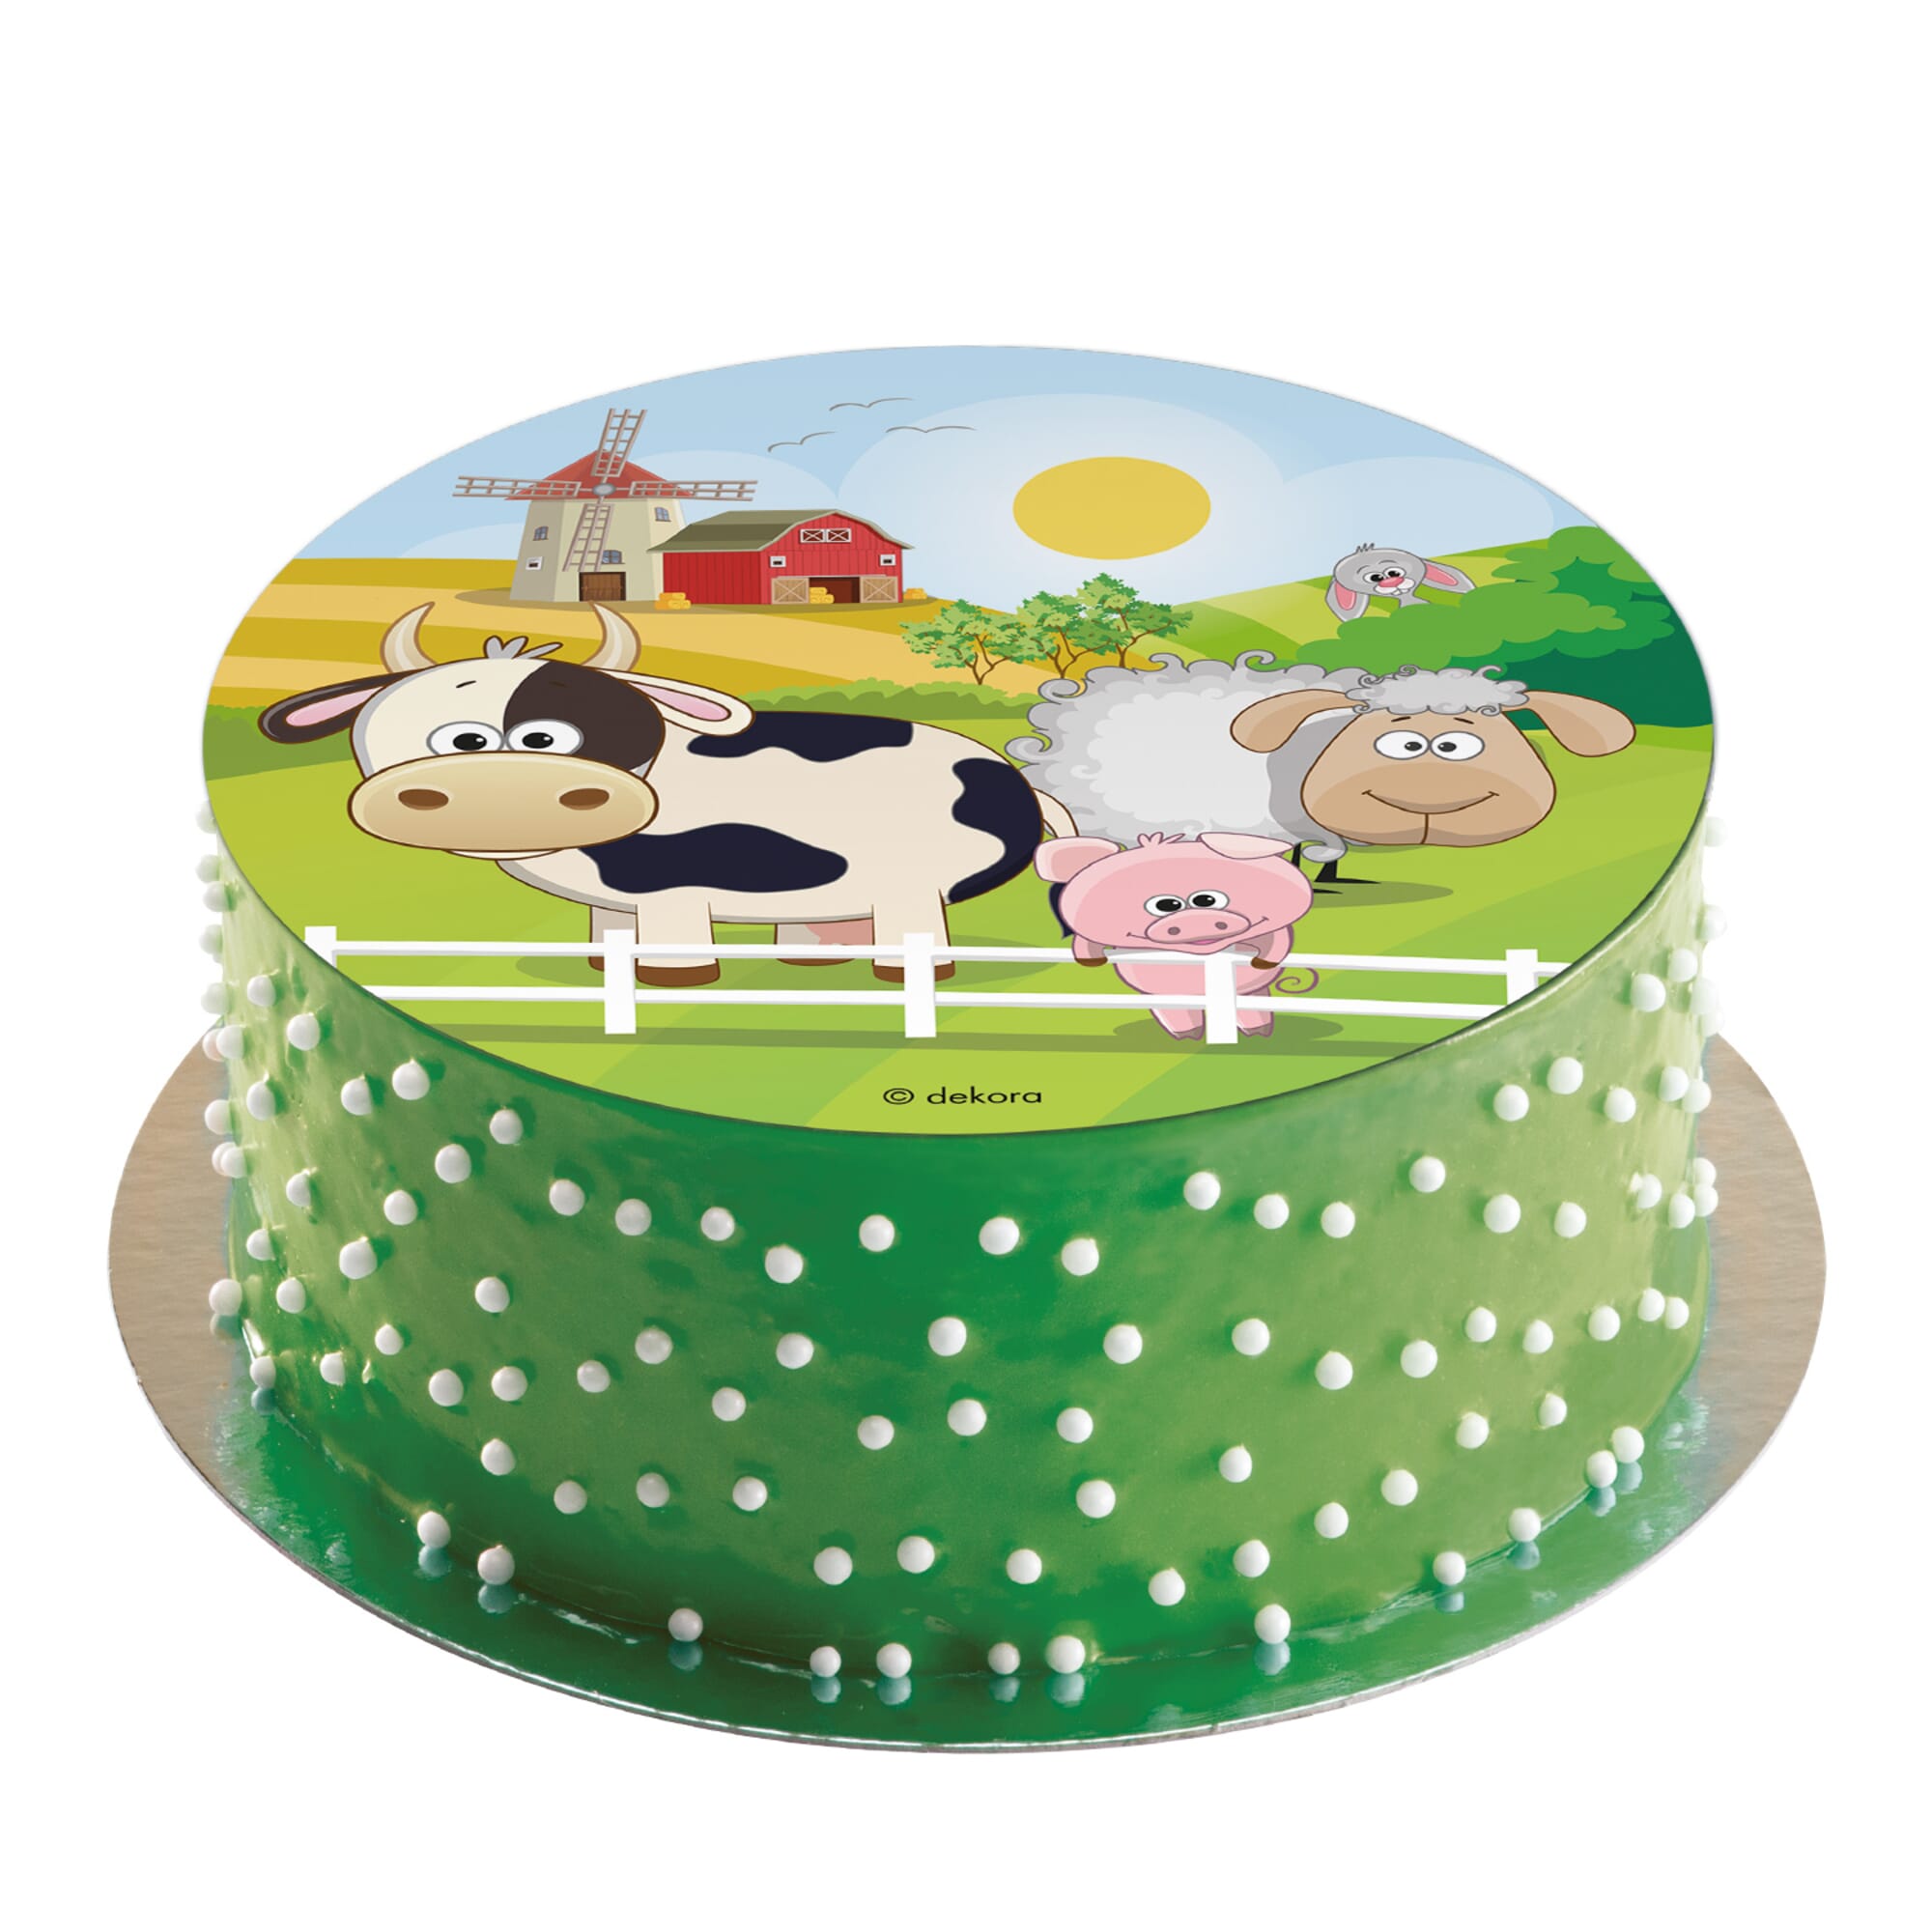 Topper de gâteau de cochon fondant pour fête danniversaire sur le thème de  la ferme, décoration danimaux de ferme fondant pour la fête de baby shower,  anniversaire de grange, figurine de cochon 